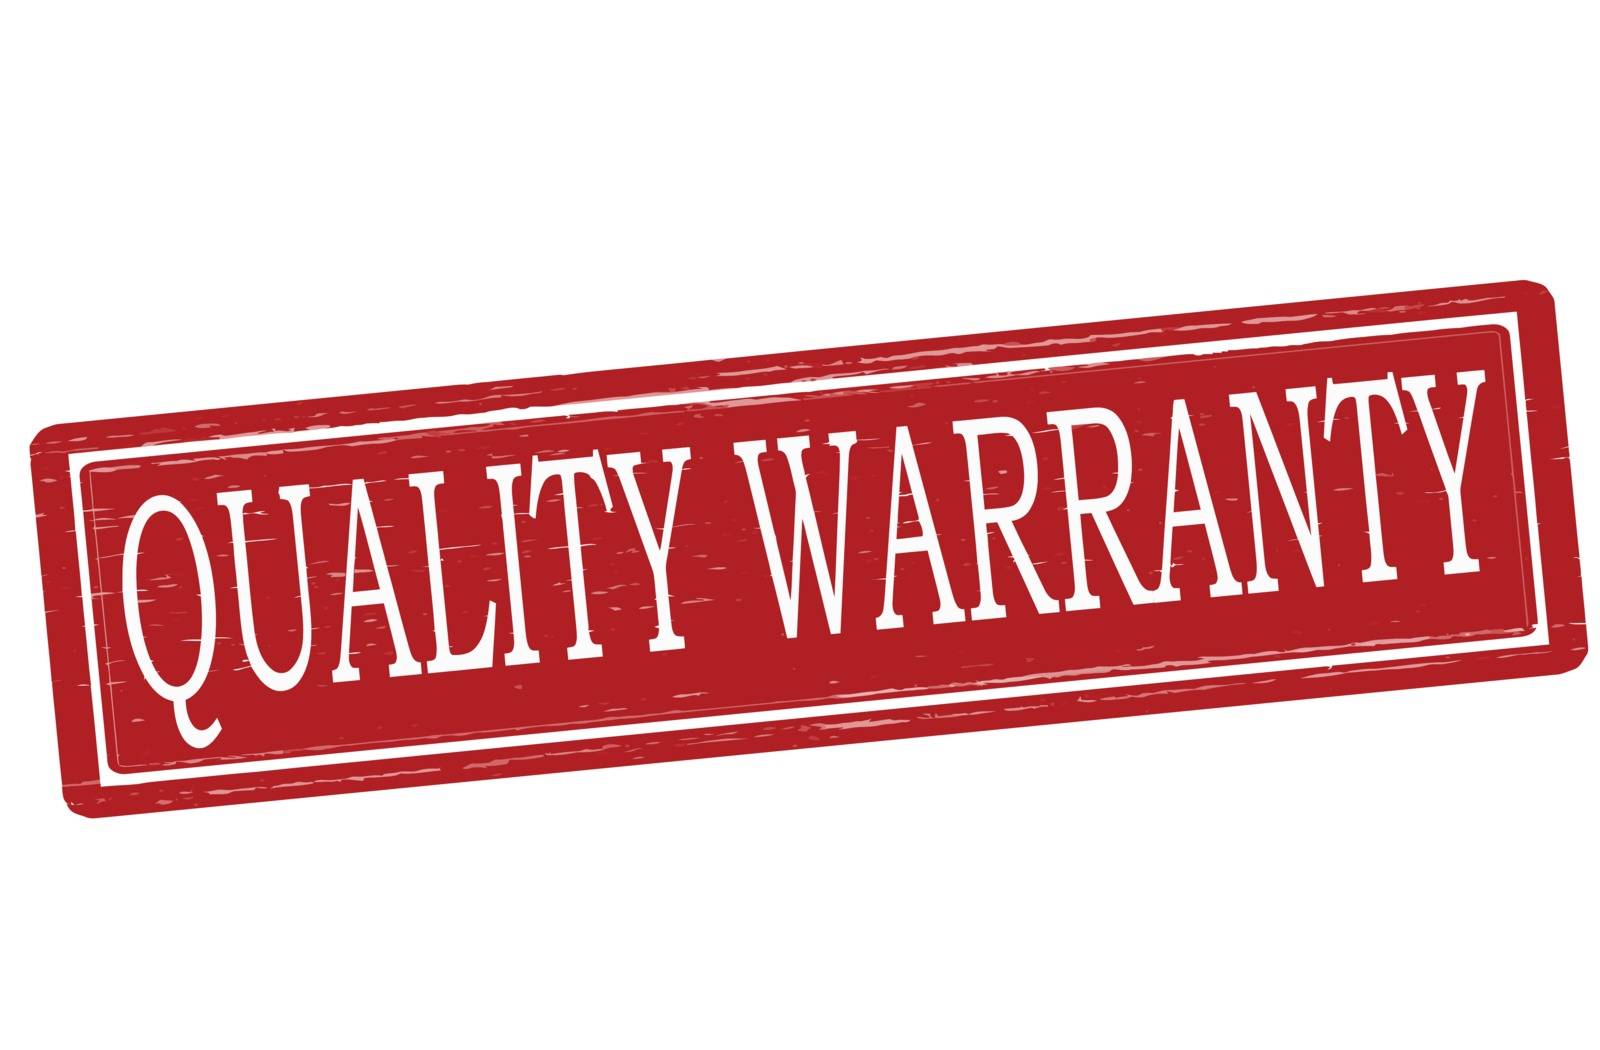 Quality warranty by carmenbobo